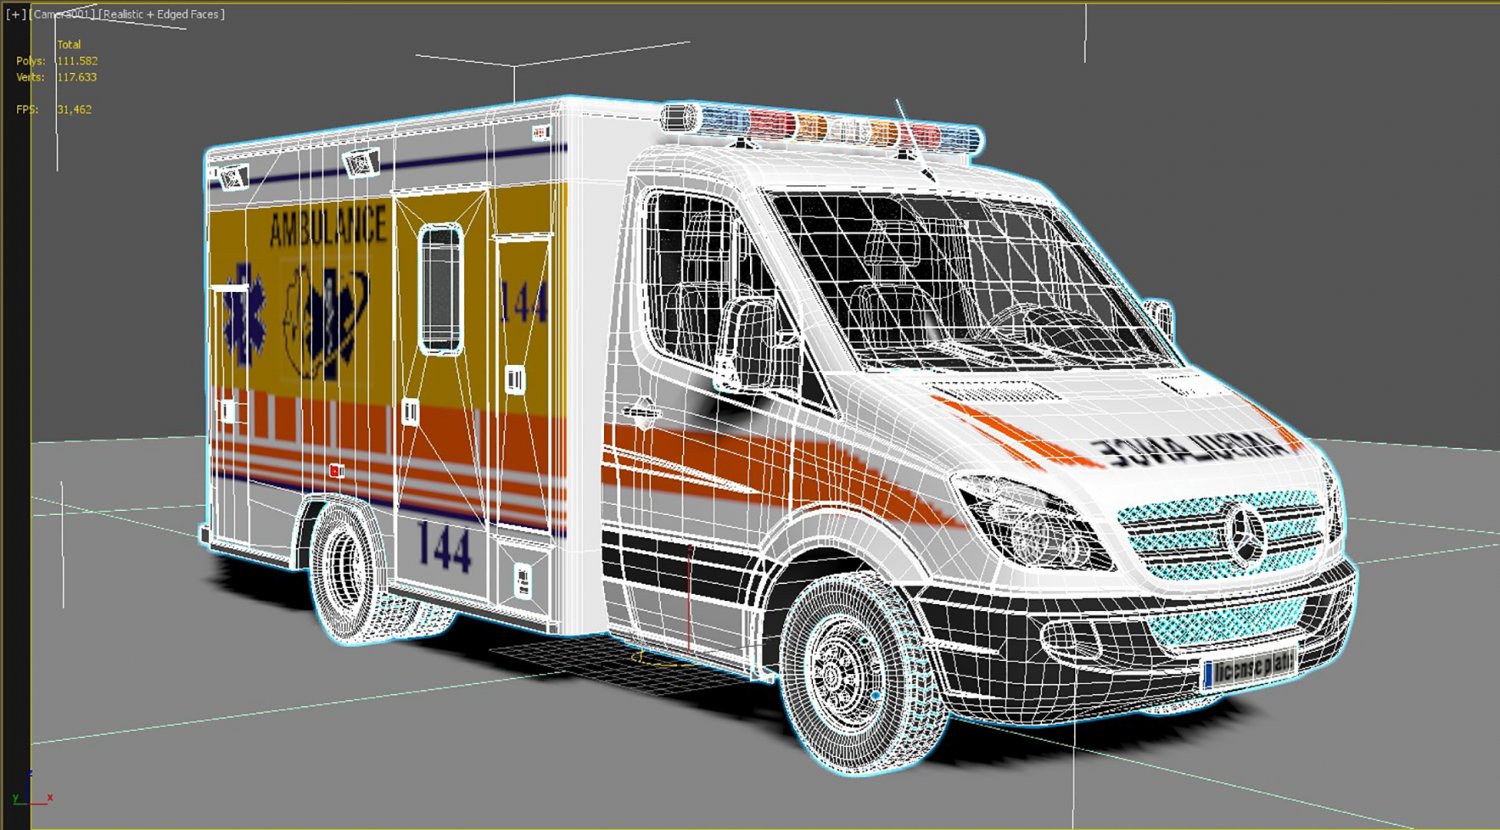 Rettungswagen / Krankenwagen / Ambulance - Download Free 3D model by  GRIP420 (@GRIP420) [e6c4858]